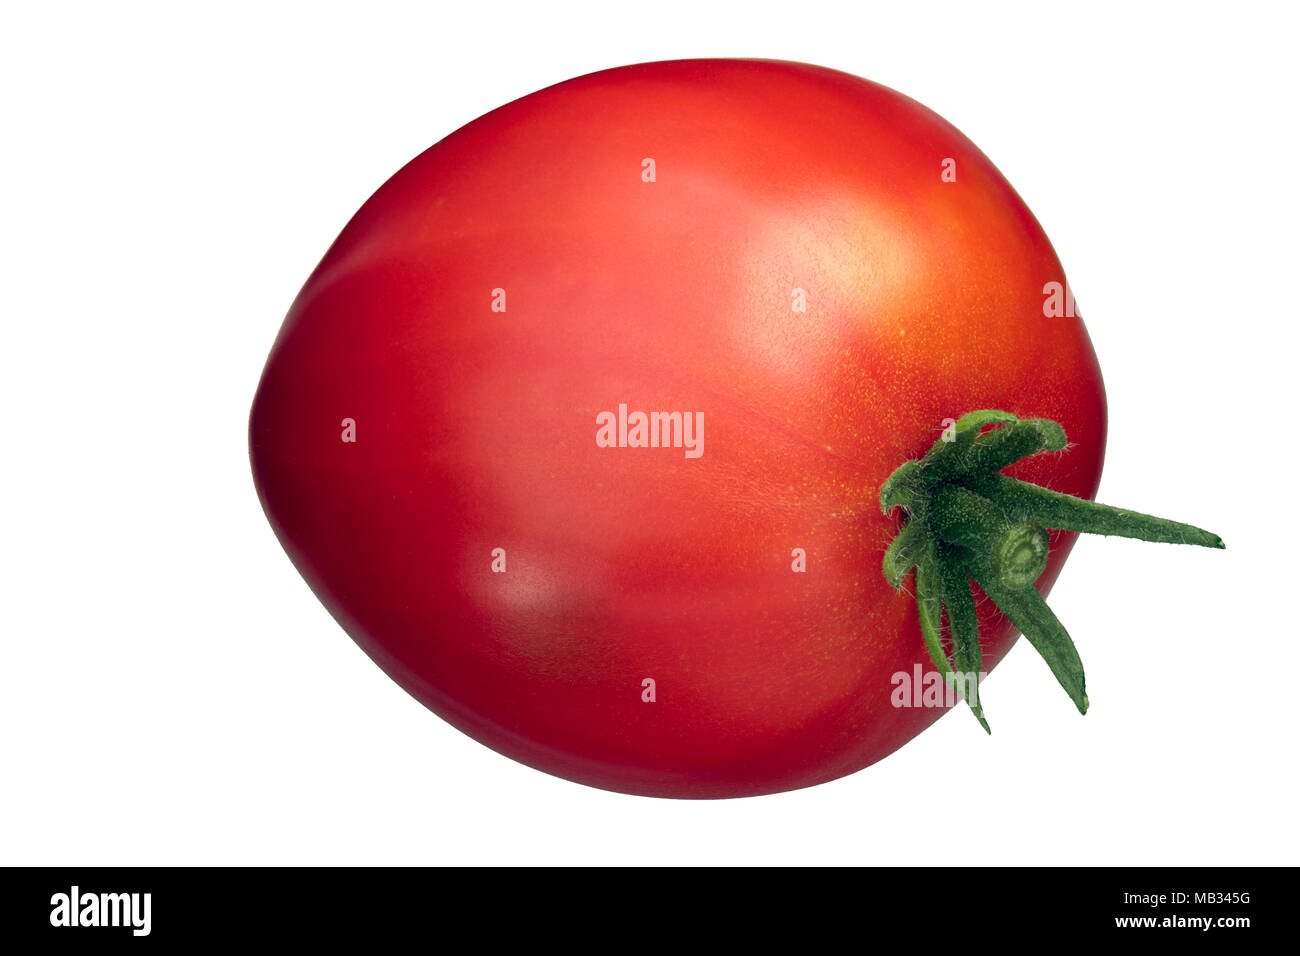 Oxheart Cuore di bue tomato (Solanum lycopersicum), whole Stock Photo